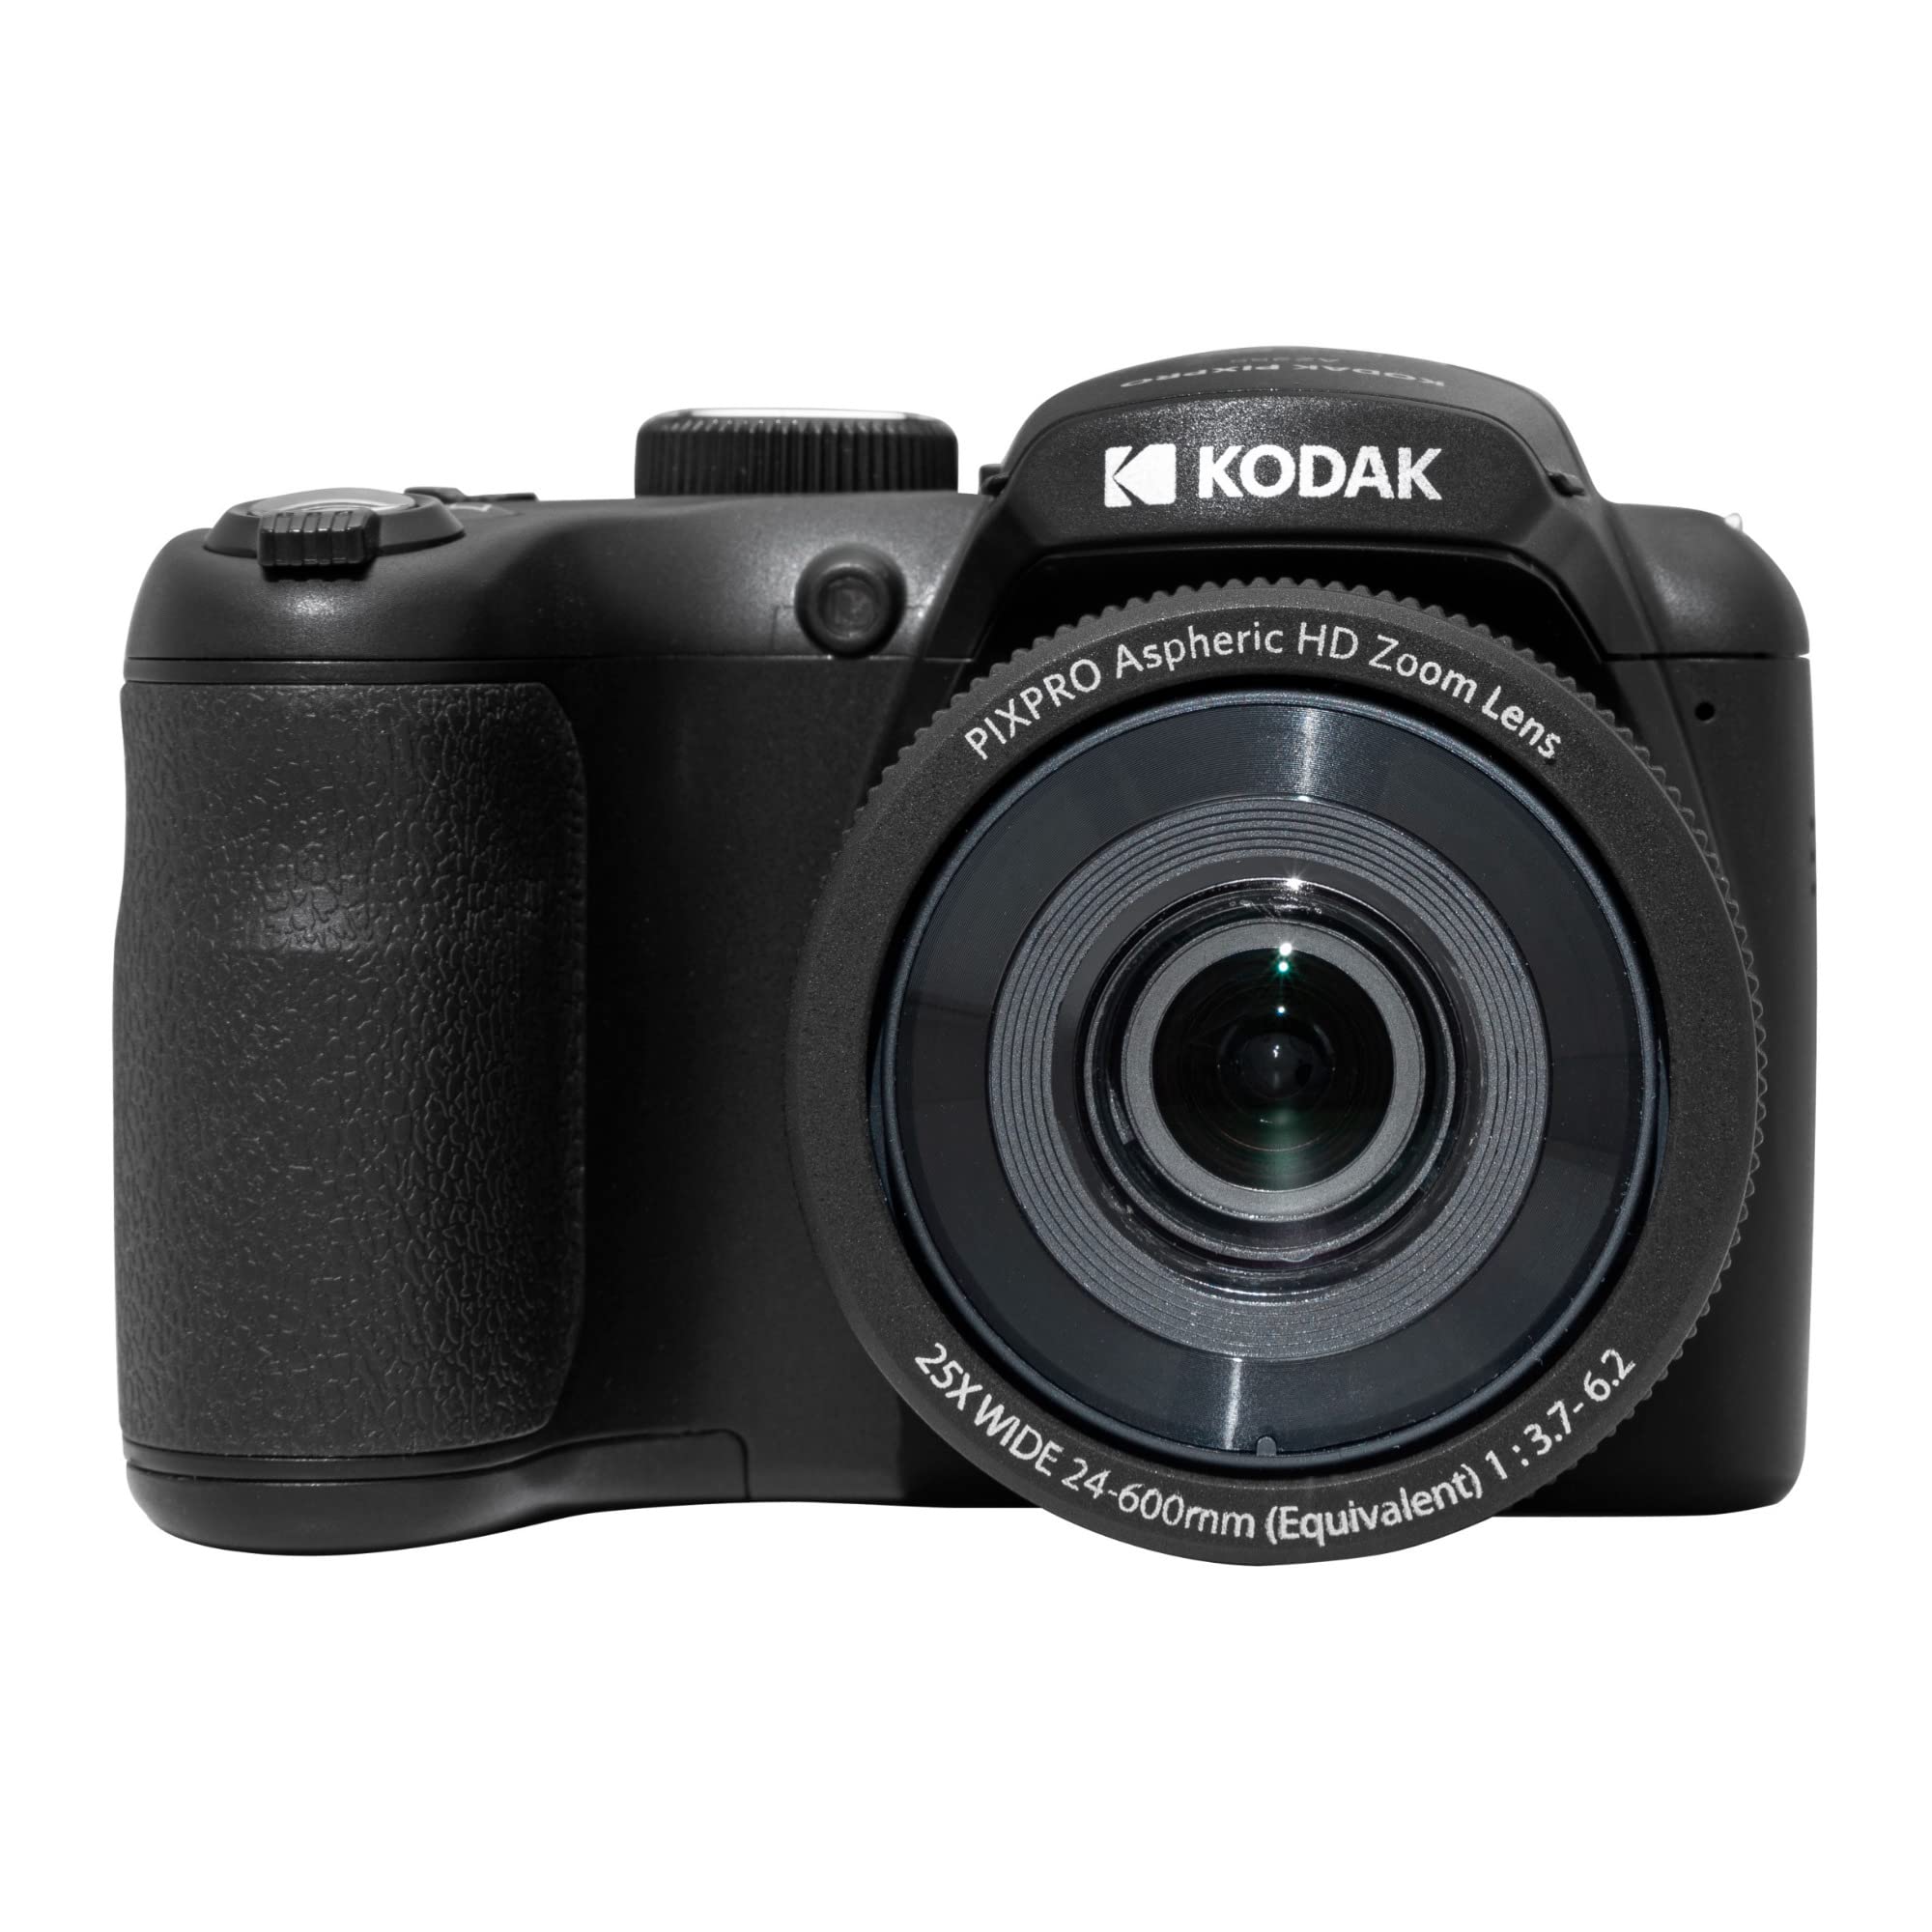 KODAK PIXPRO Astro Zoom AZ255-BK 16MP Digitalkamera mit 25-fachem optischen Zoom, 24 mm Weitwinkel, 1080P Full HD Video und 7,6 cm LCD, Schwarz